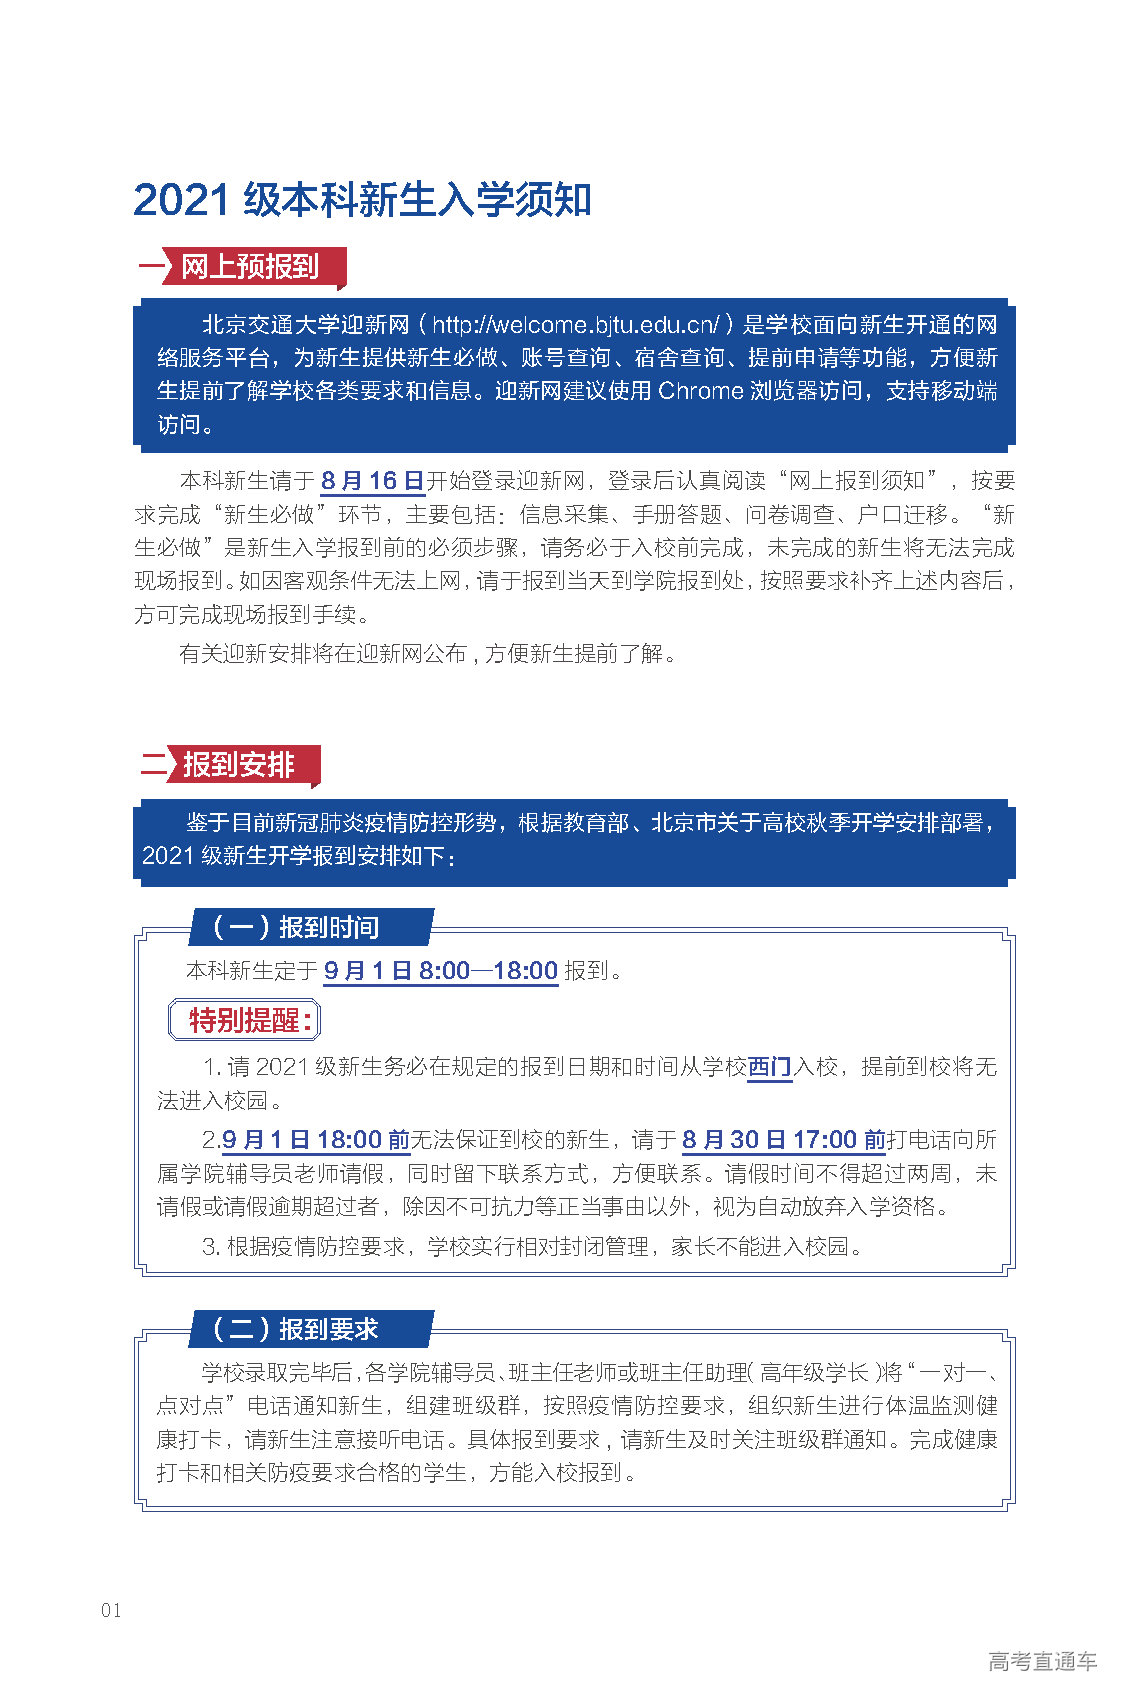 2021年北京交通大学迎新系统 报到流程及入学须知